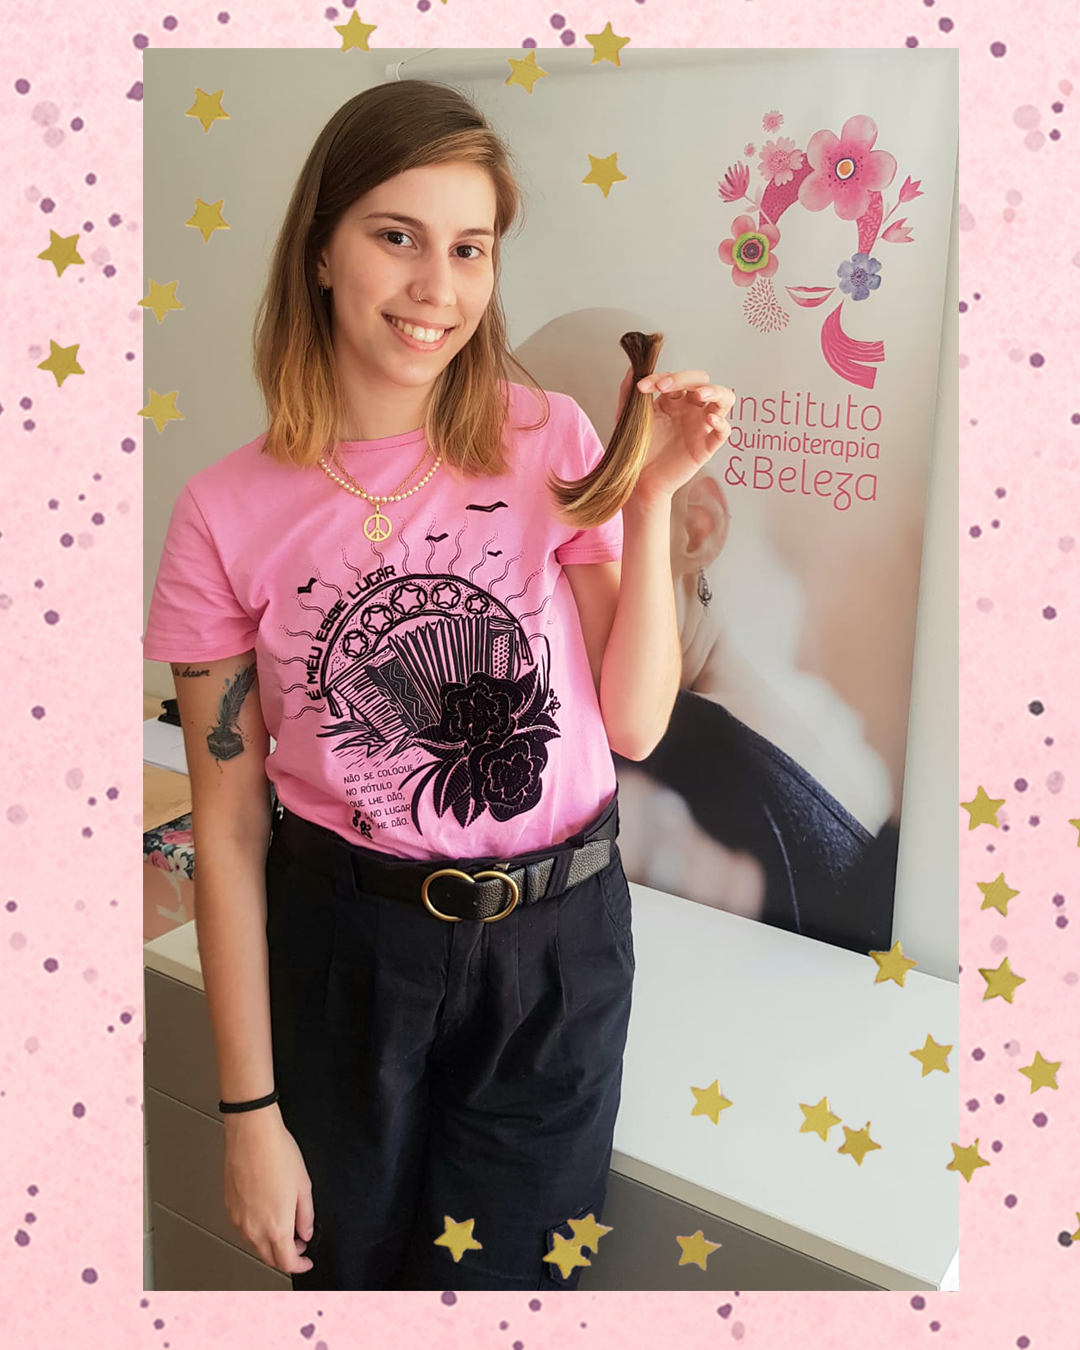 Sofia Duarte, repórter de moda e beleza da CAPRICHO, usando camiseta rosa e calça preta, sorrindo e segurando uma mecha de cabelo para doação. O fundo da montagem é rosa de bolinhas com estrelinhas douradas